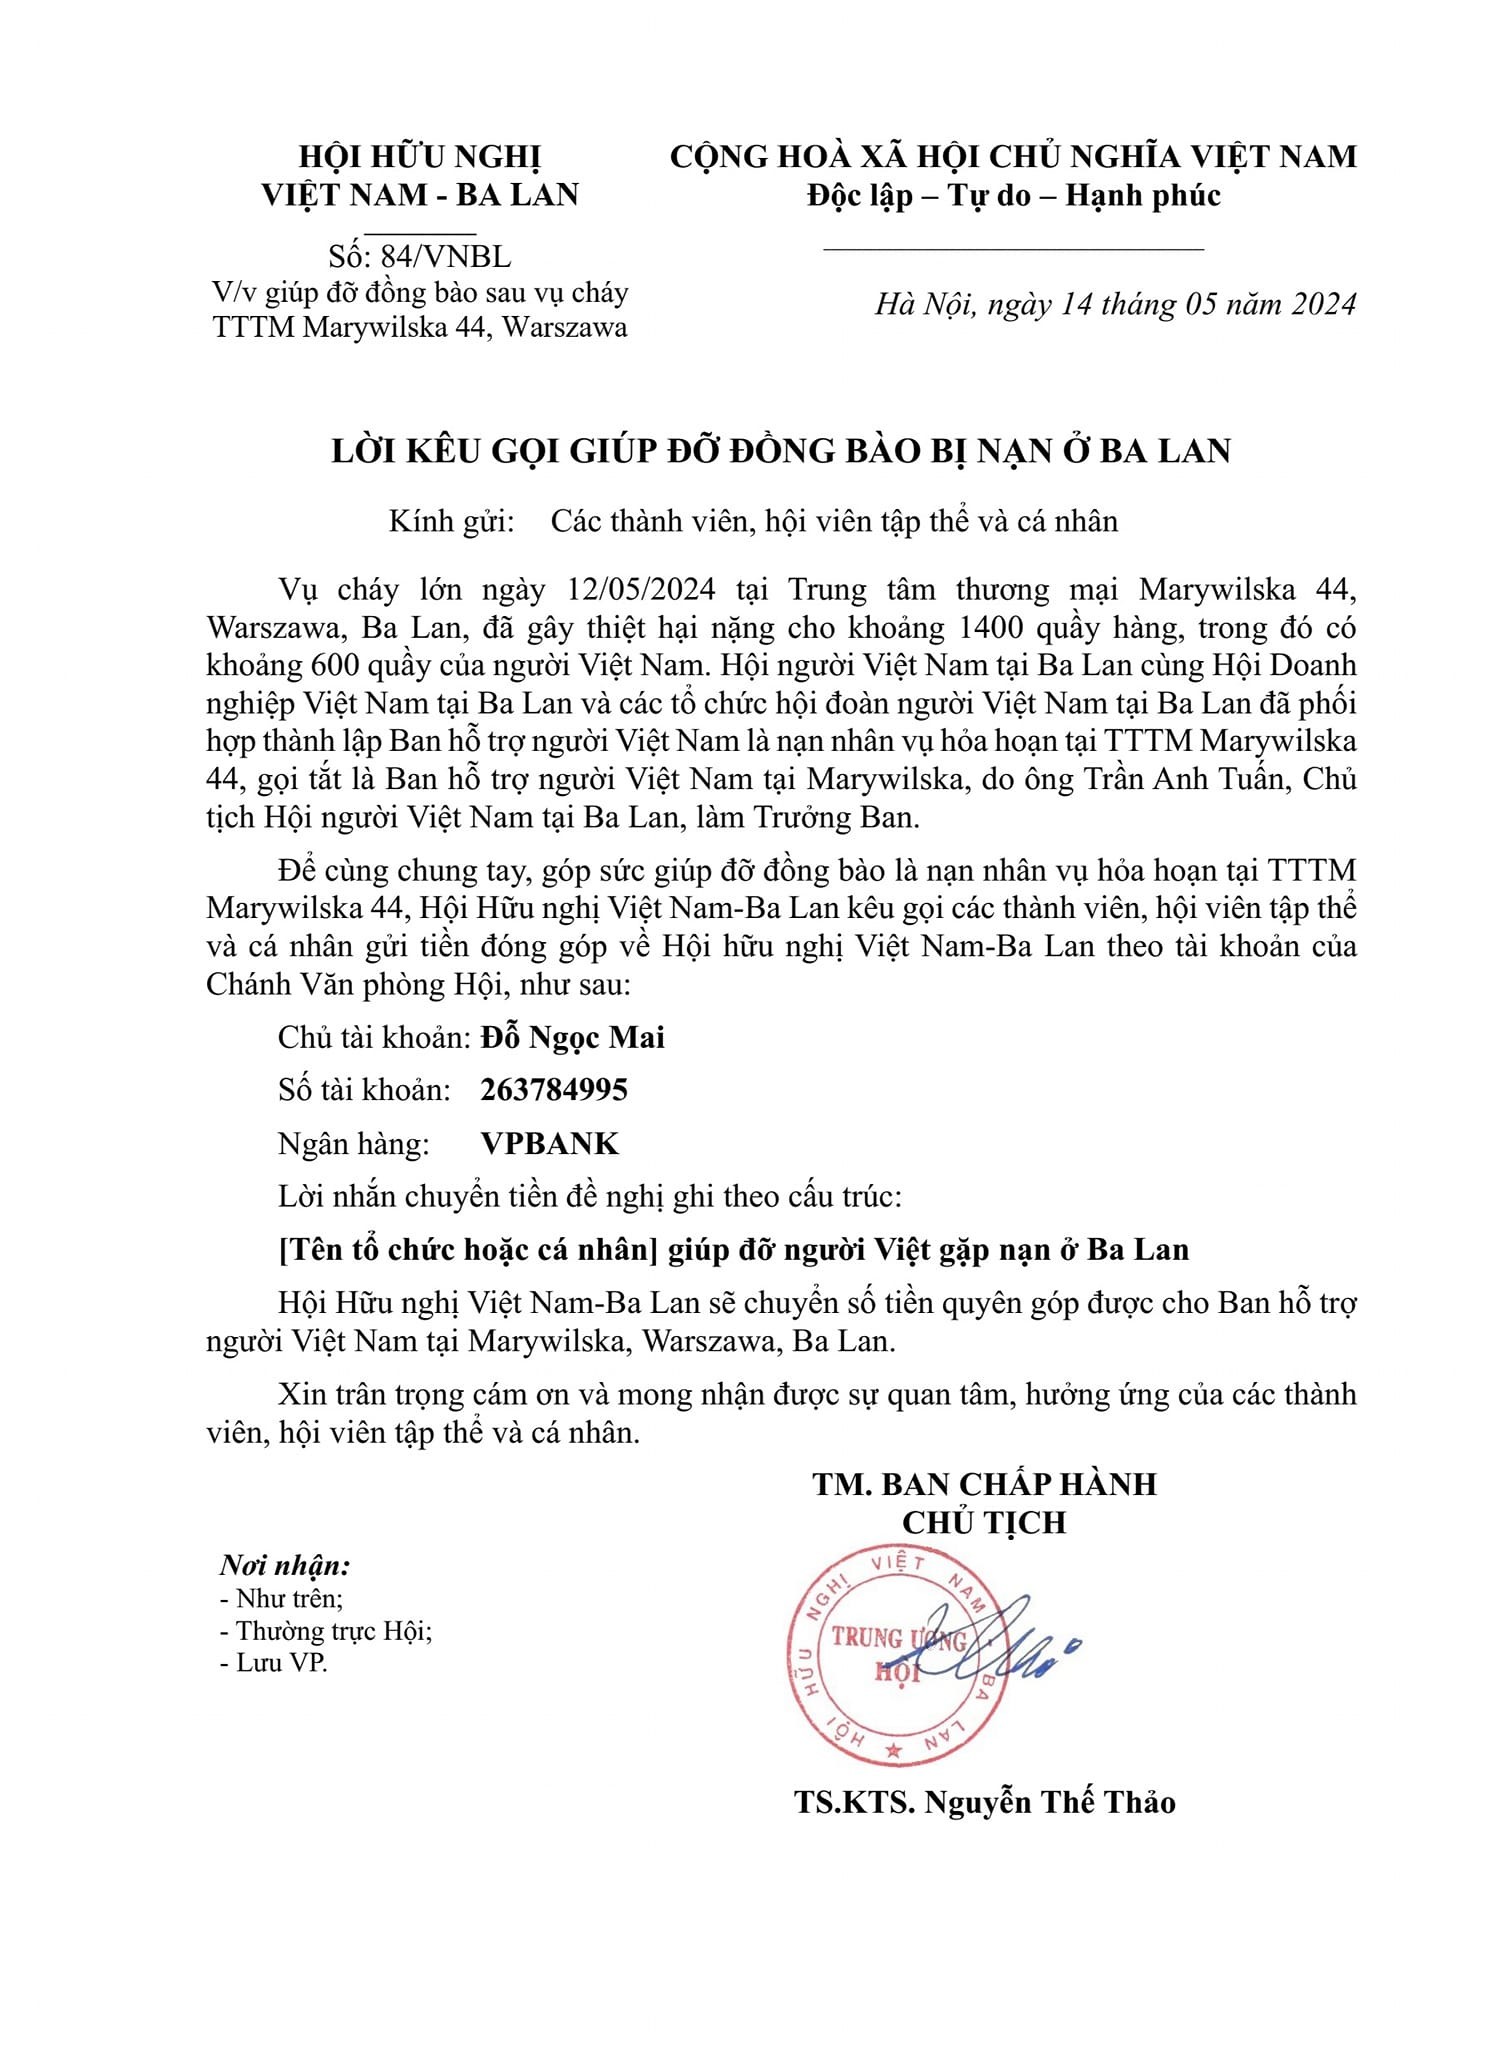 Văn bản kêu gọi hội viên giúp đỡ đồng bào bị ảnh hưởng sau vu cháy trung tâm thương mại ở Ba Lan của Hội hữu nghị Việt Nam - Ban Lan.